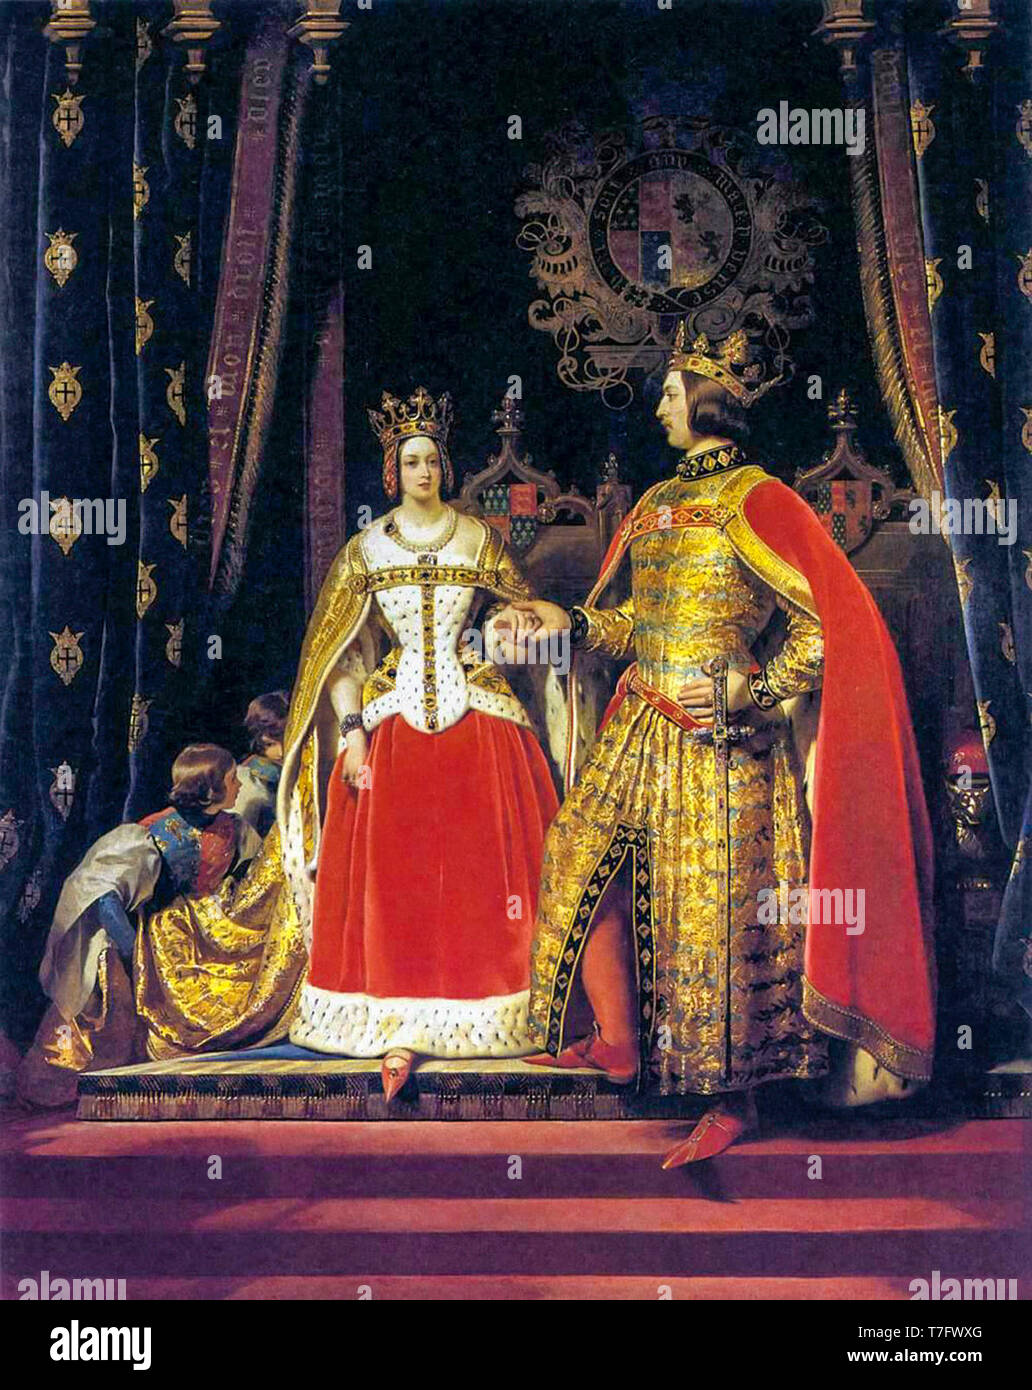 Edwin Henry Landseer, la reine Victoria et le Prince Albert au Bal costumé du 12 mai 1842, 1842 Banque D'Images